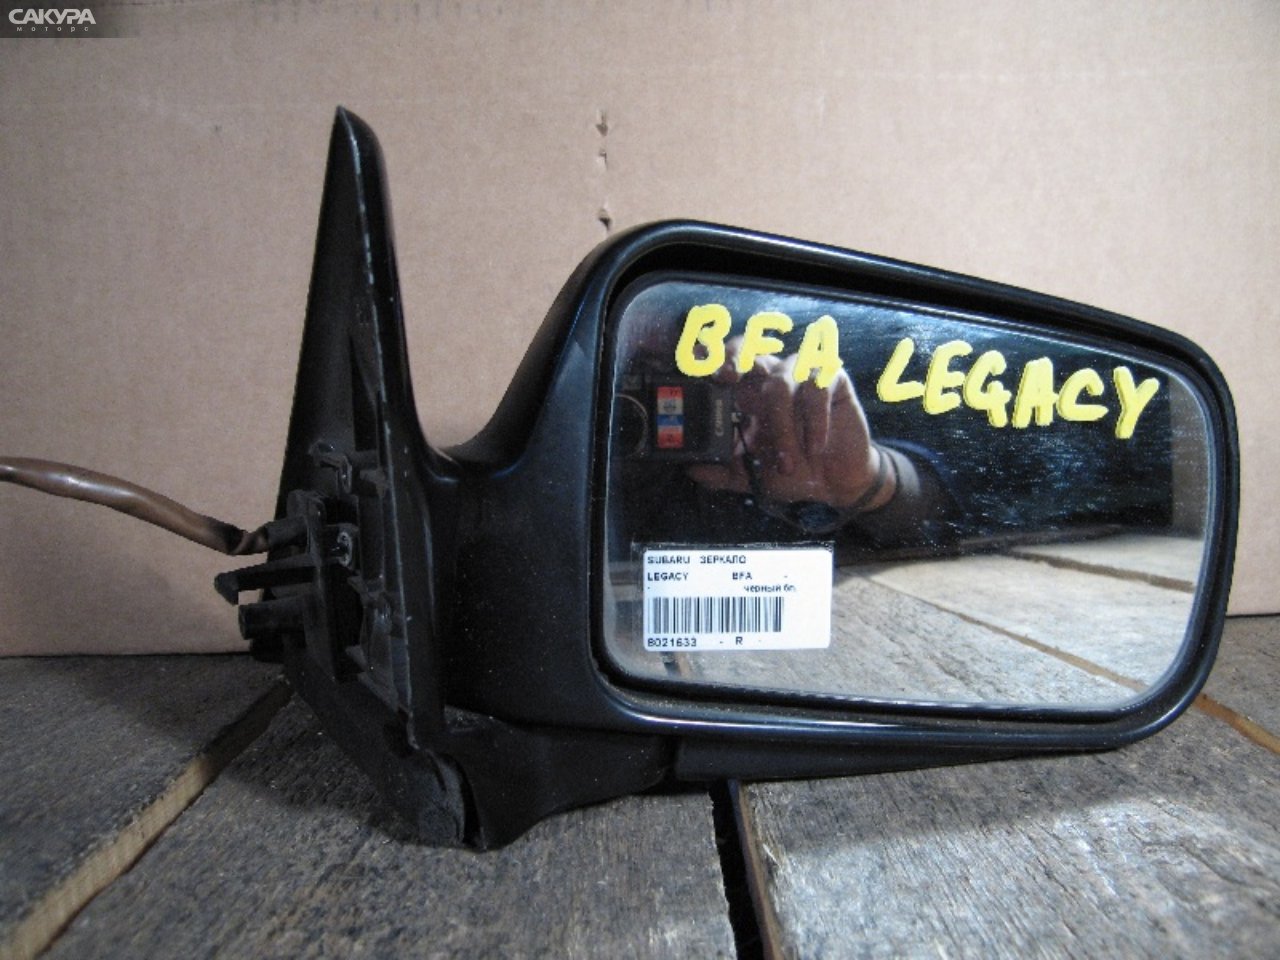 Зеркало боковое правое Subaru Legacy BFA: купить в Сакура Абакан.